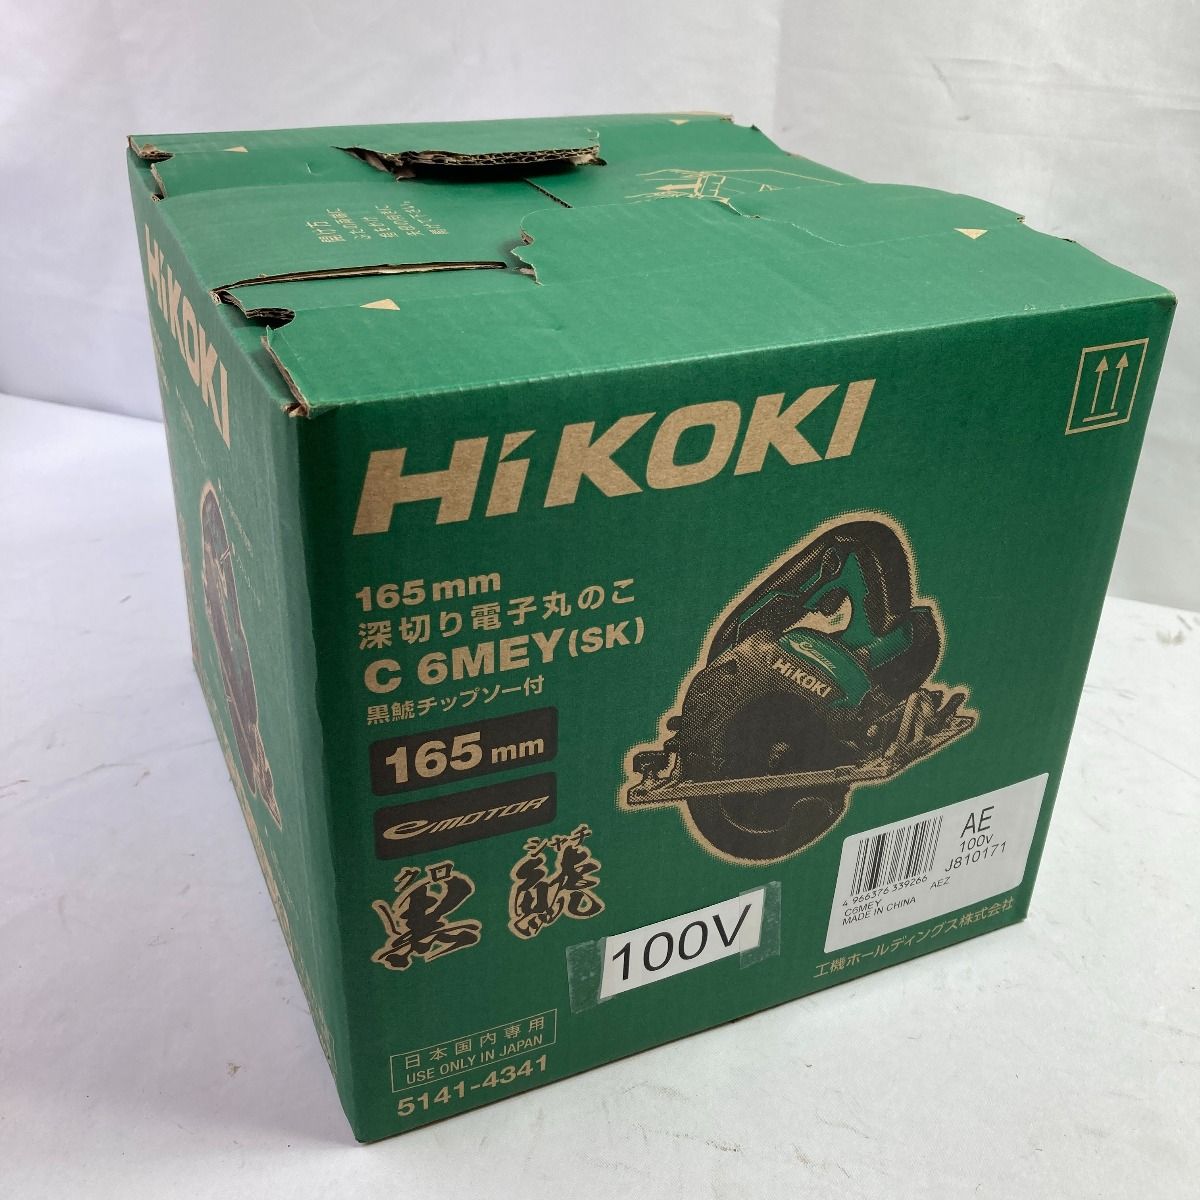 HiKOKI ハイコーキ 165mm コード式深切り電子丸ノコ 黒鯱チップソー